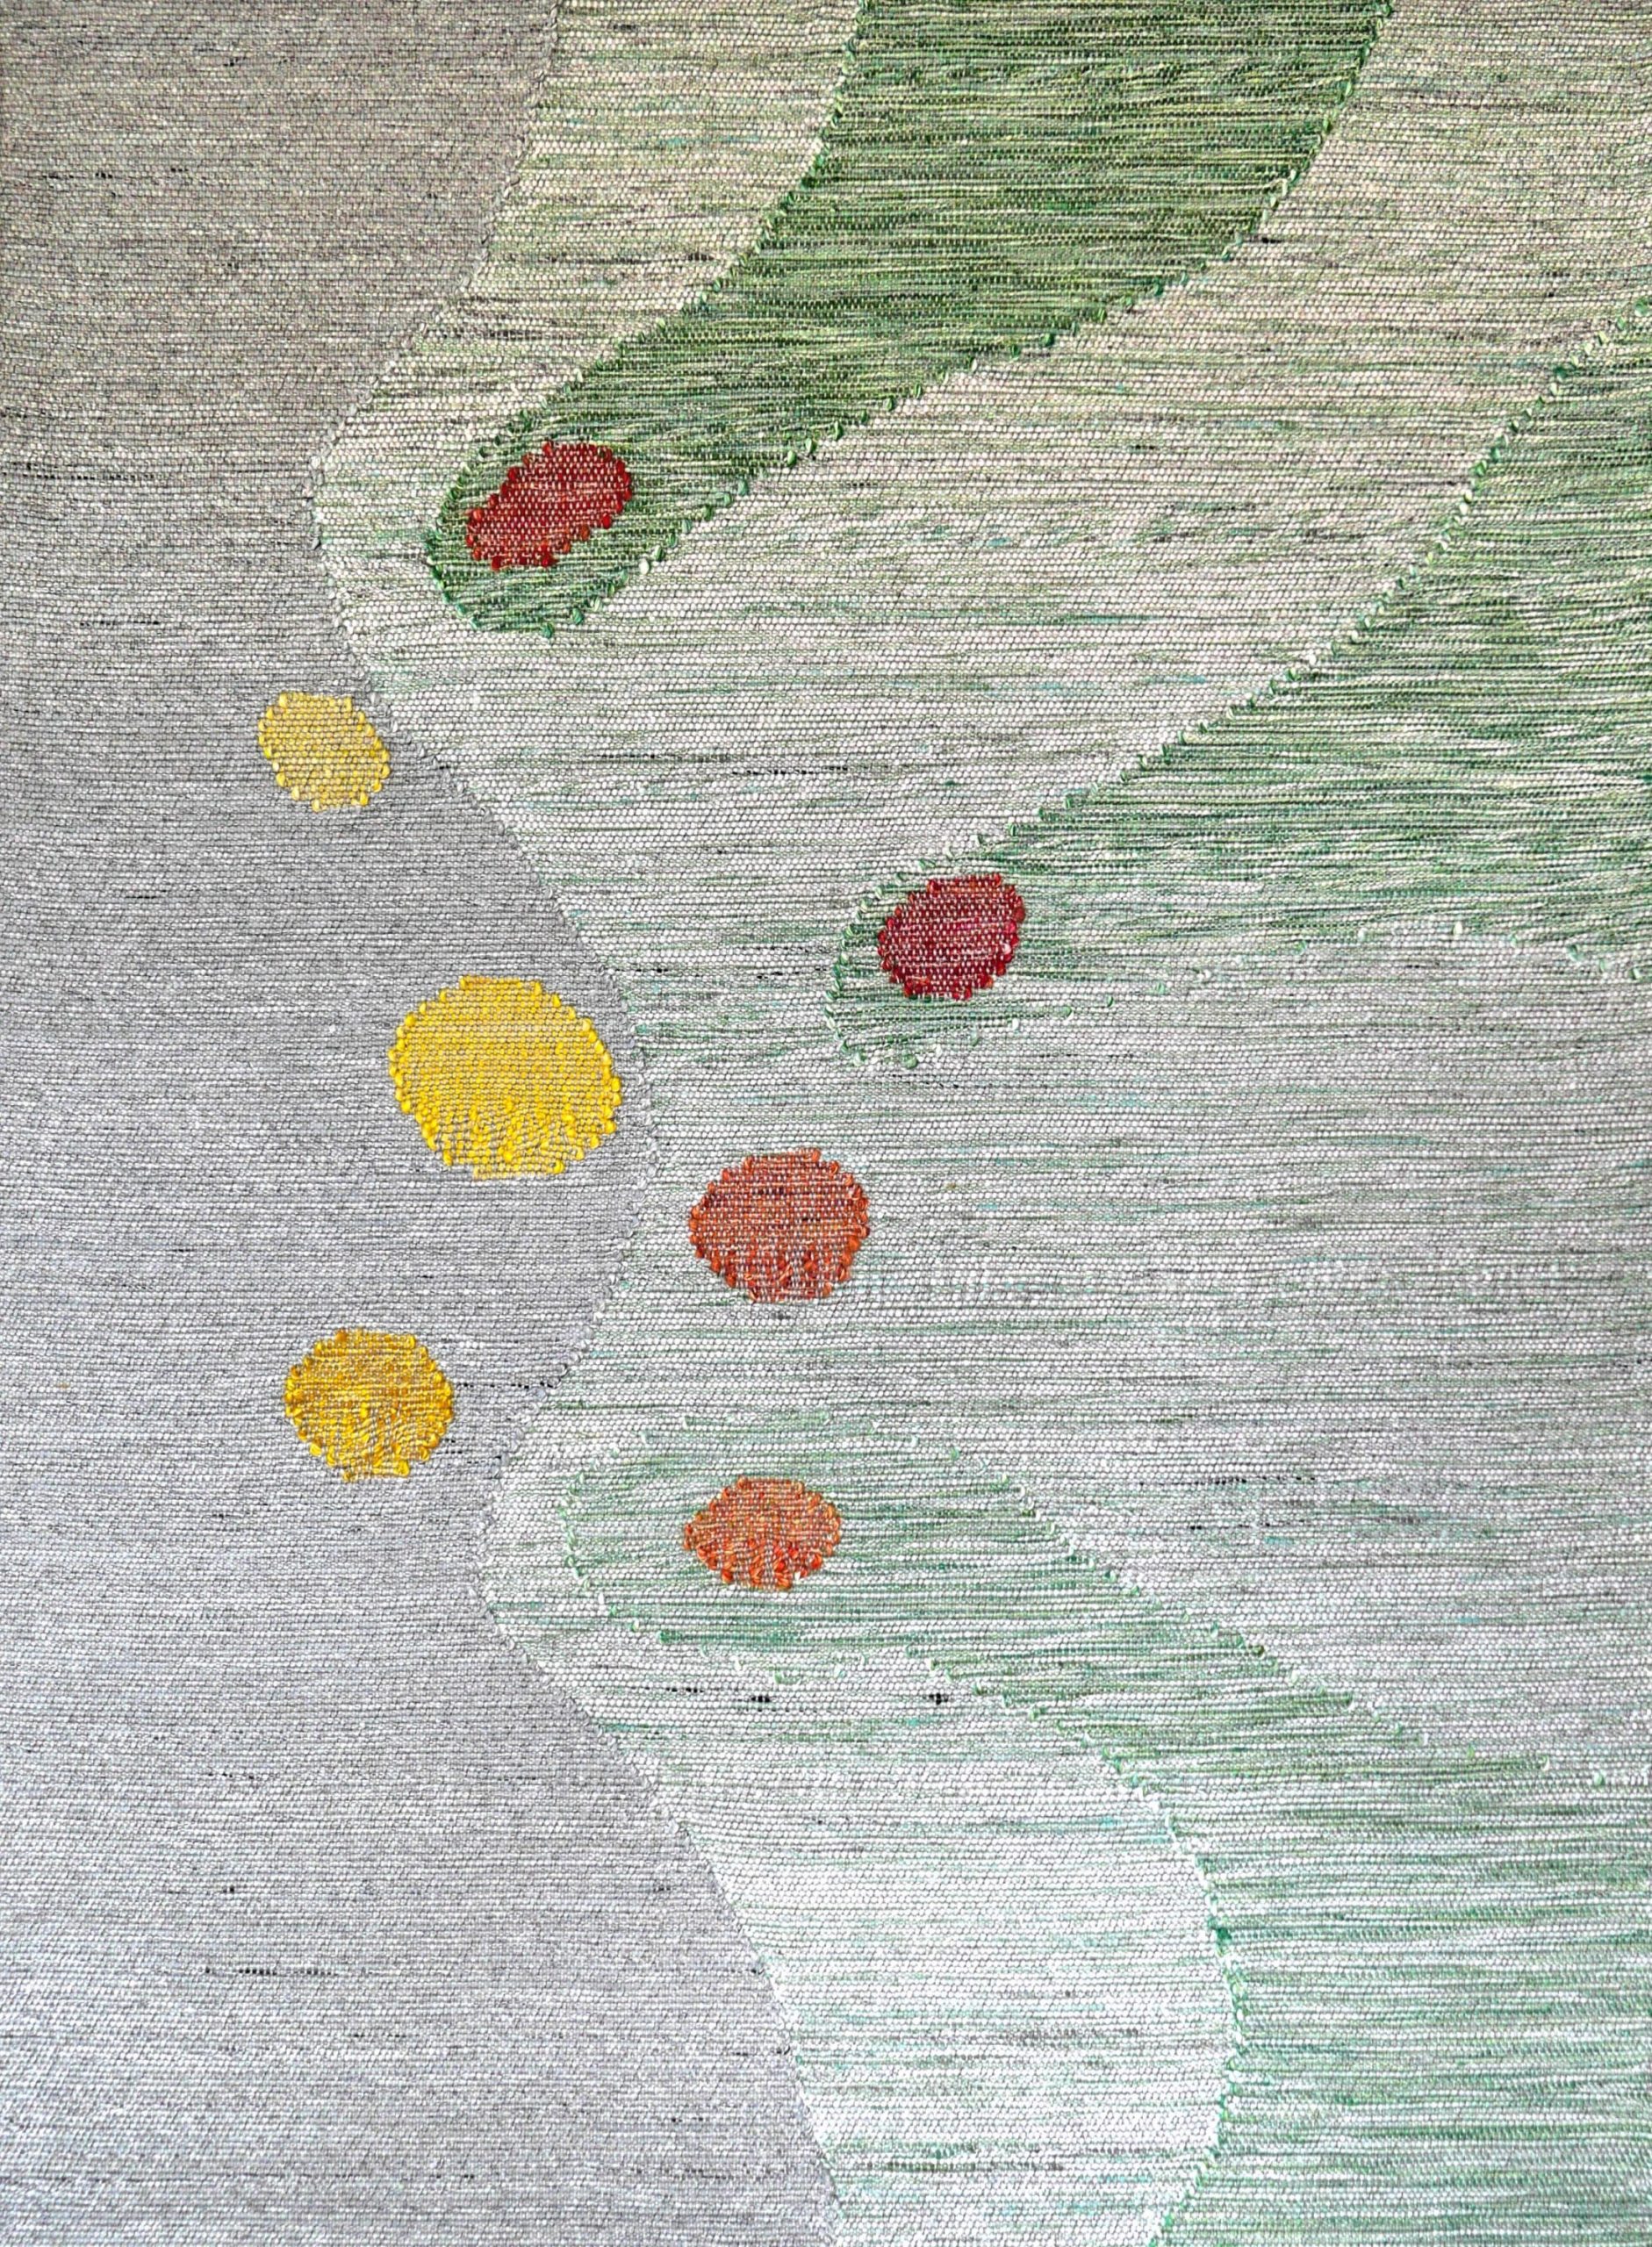 Simone Prouvé, 031215, 2015, oeuvre textile en inox, polyester, Kanekalon®, Clevyl®, aramides, 172 x 125 cm© ADAGP Paris © Simone Prouvé